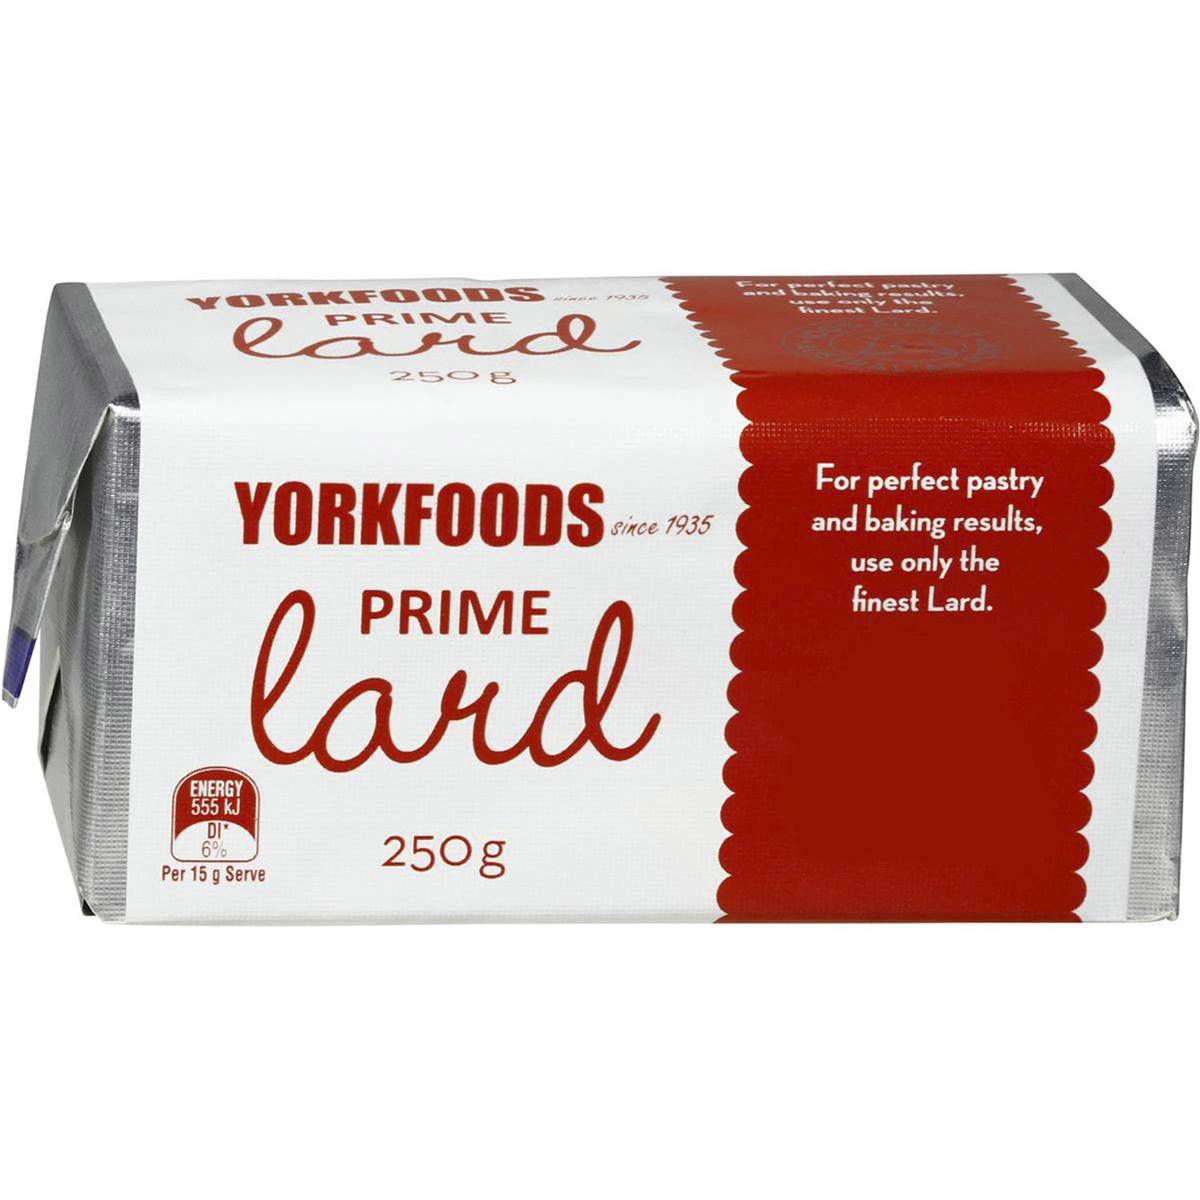 Calories in York Foods Lard